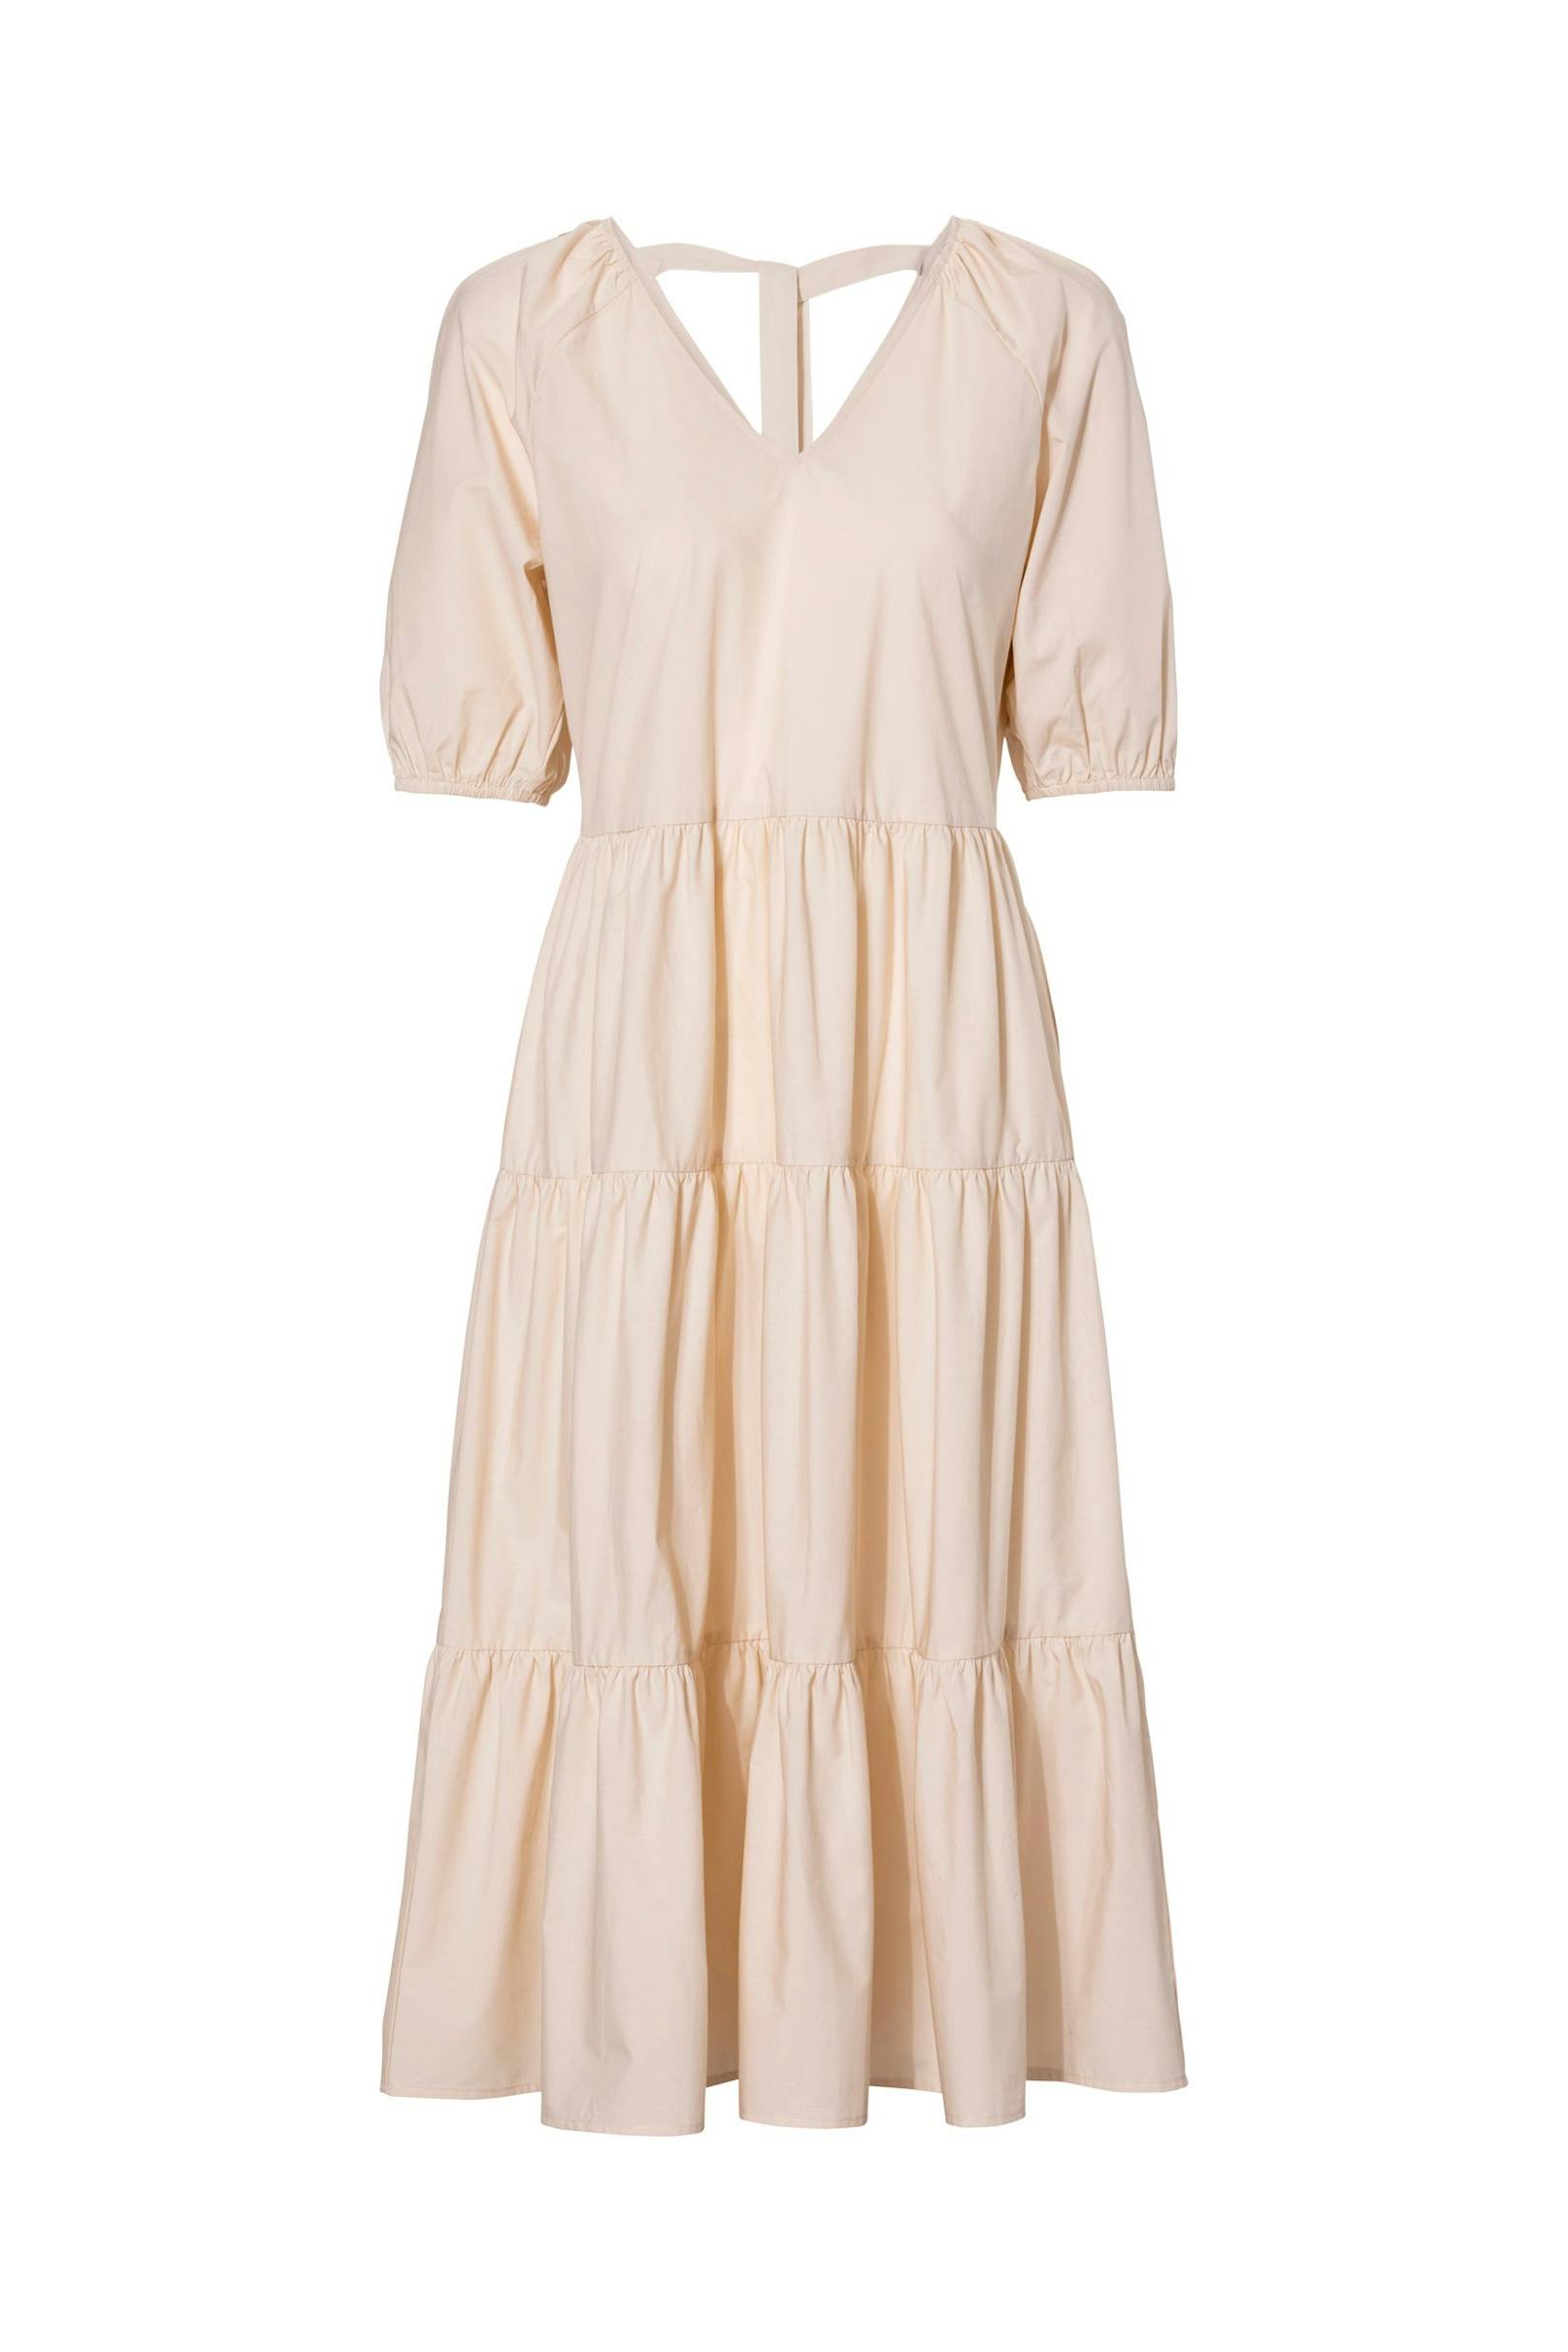 Baumwoll-Kleid von C&amp;A um 39,99 Euro.